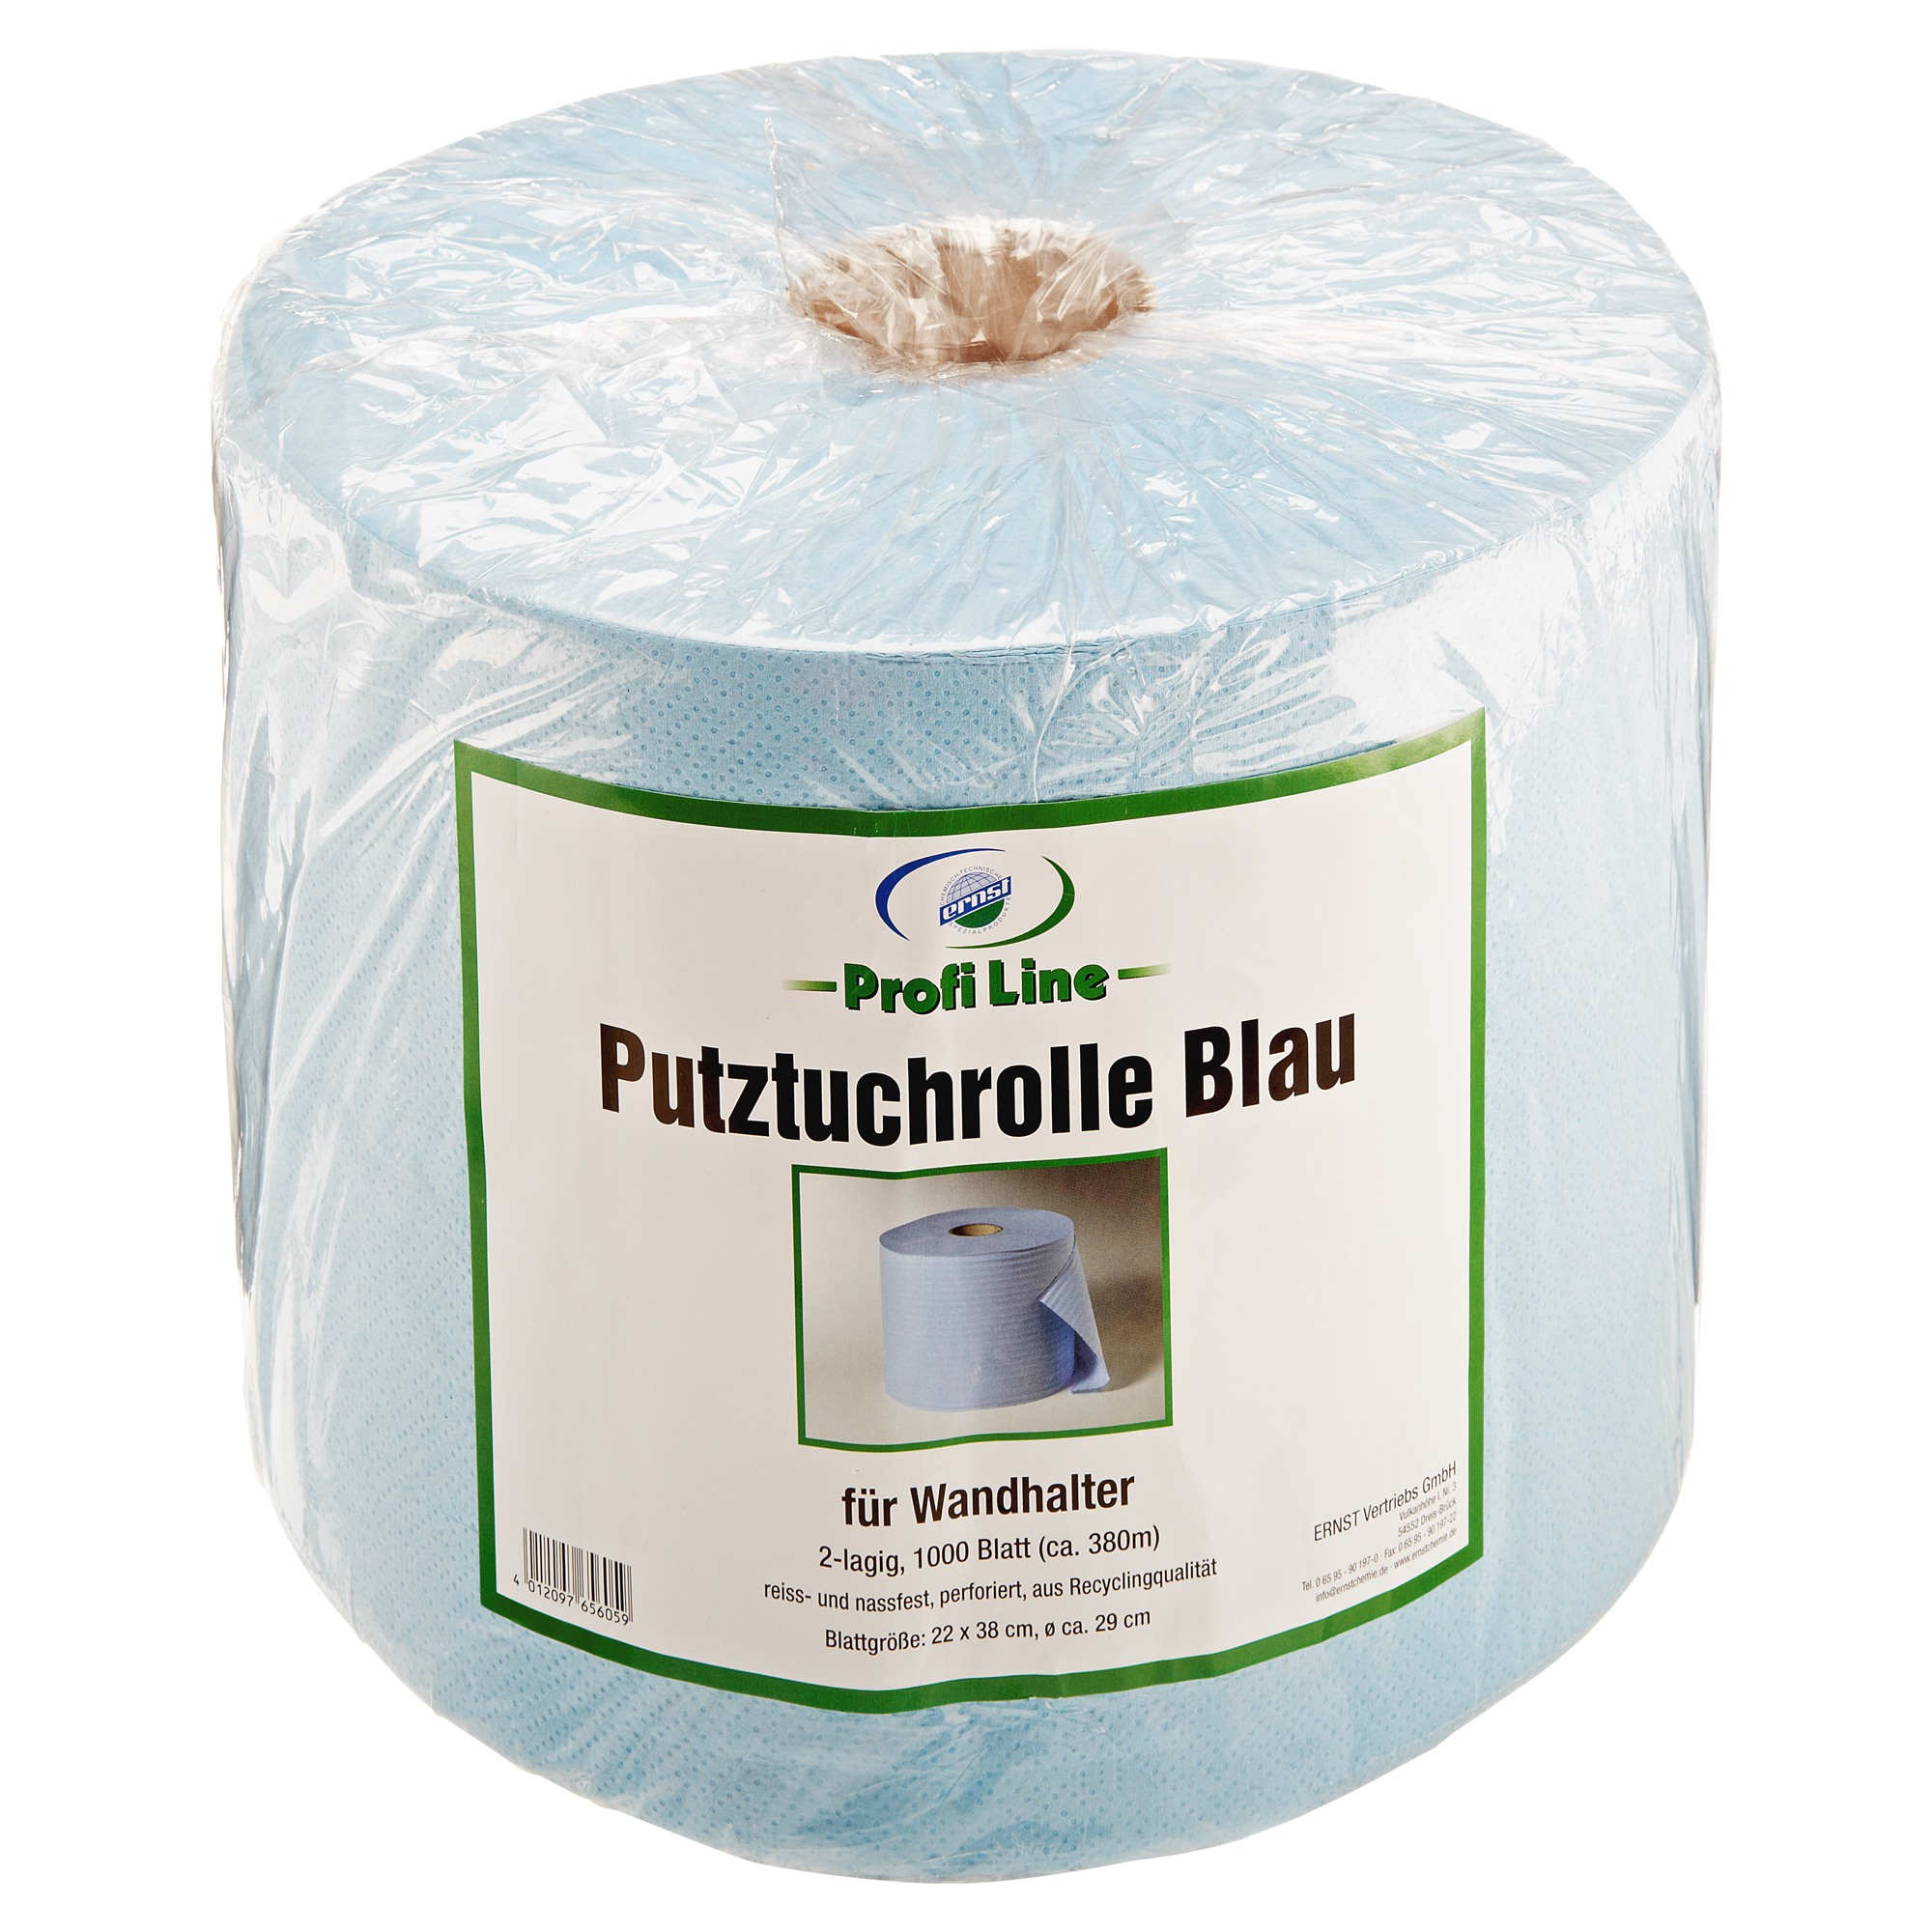 1 Putztuchrolle 2-lagig 1000 Blatt/Rolle Putzpapier Werkstattrolle blau 36x36cm 